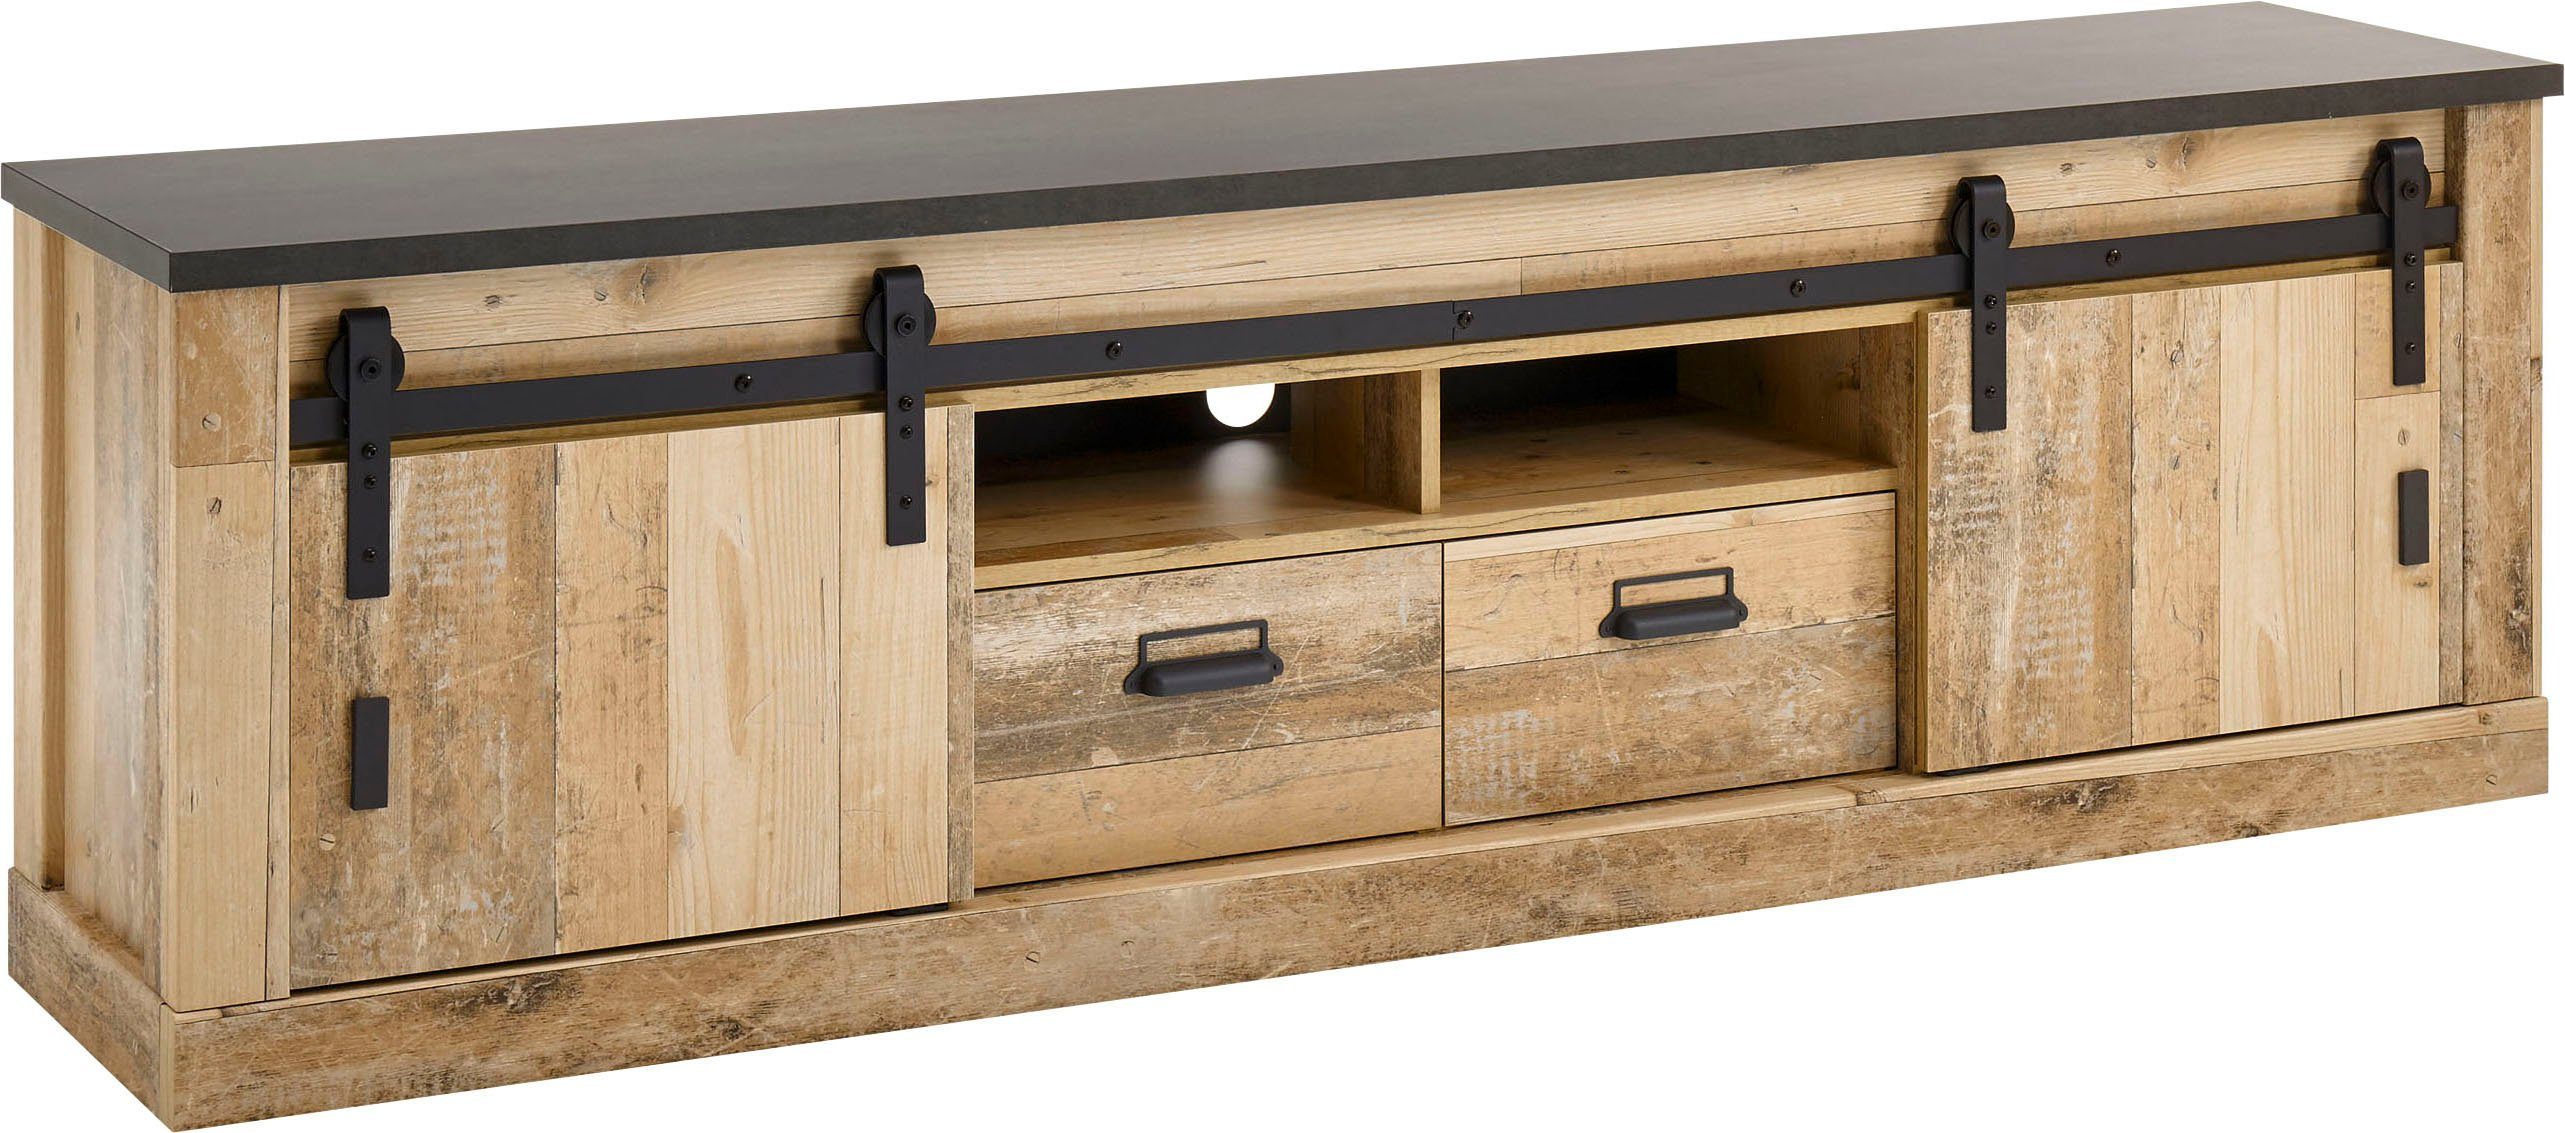 Home affaire Tv-meubel Sherwood modern houtdecor, met schuurdeurbeslag van metaal, breedte 201 cm